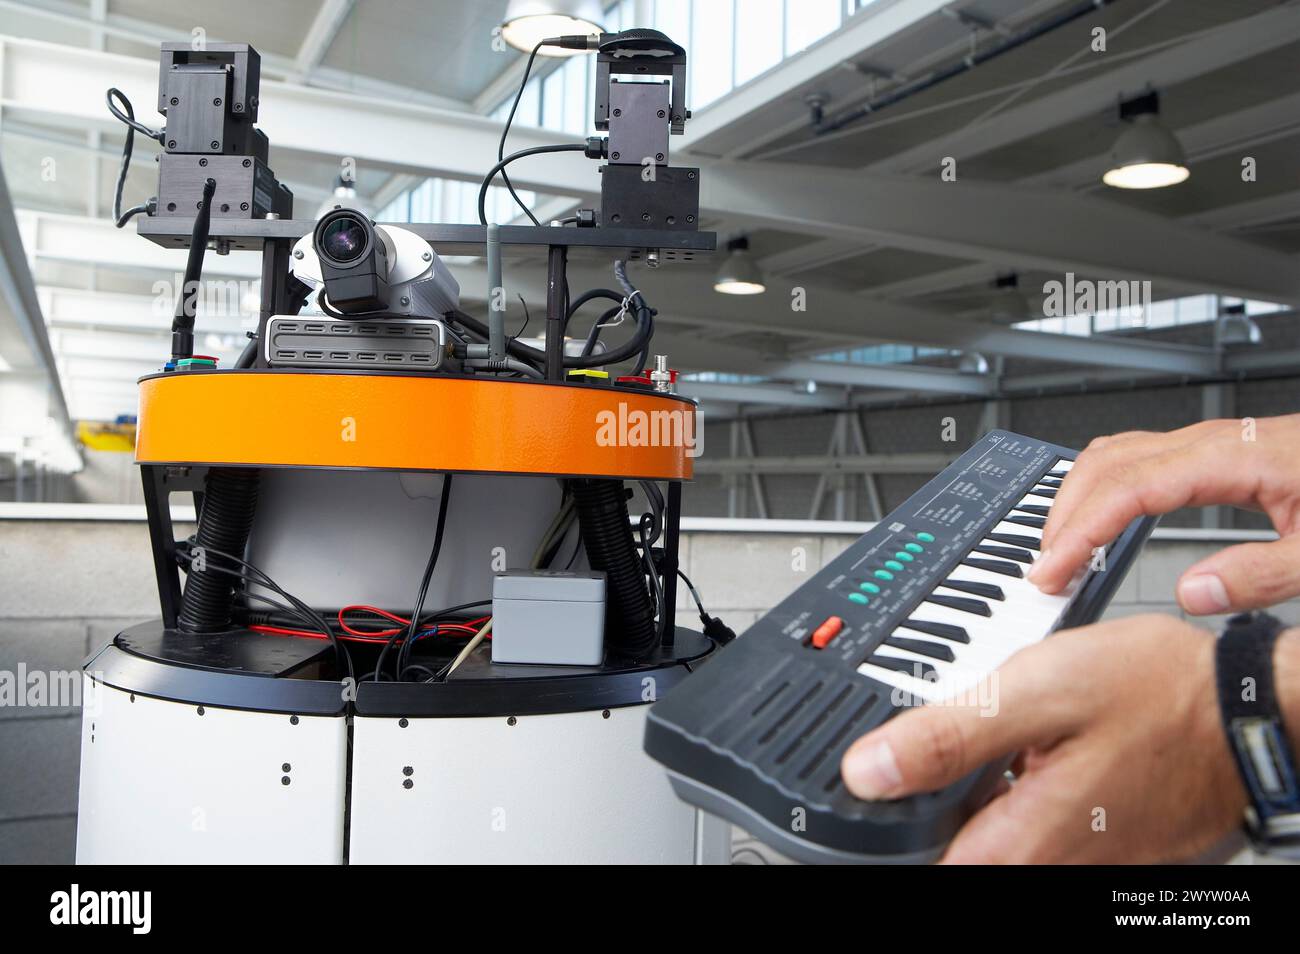 Researcher with music keywboard operating Robot Mirela, Fundacion Fatronik, Centro de Investigacion Tecnologica, Donostia, San Sebastian, Gipuzkoa, Basque country, Spain. Stock Photo